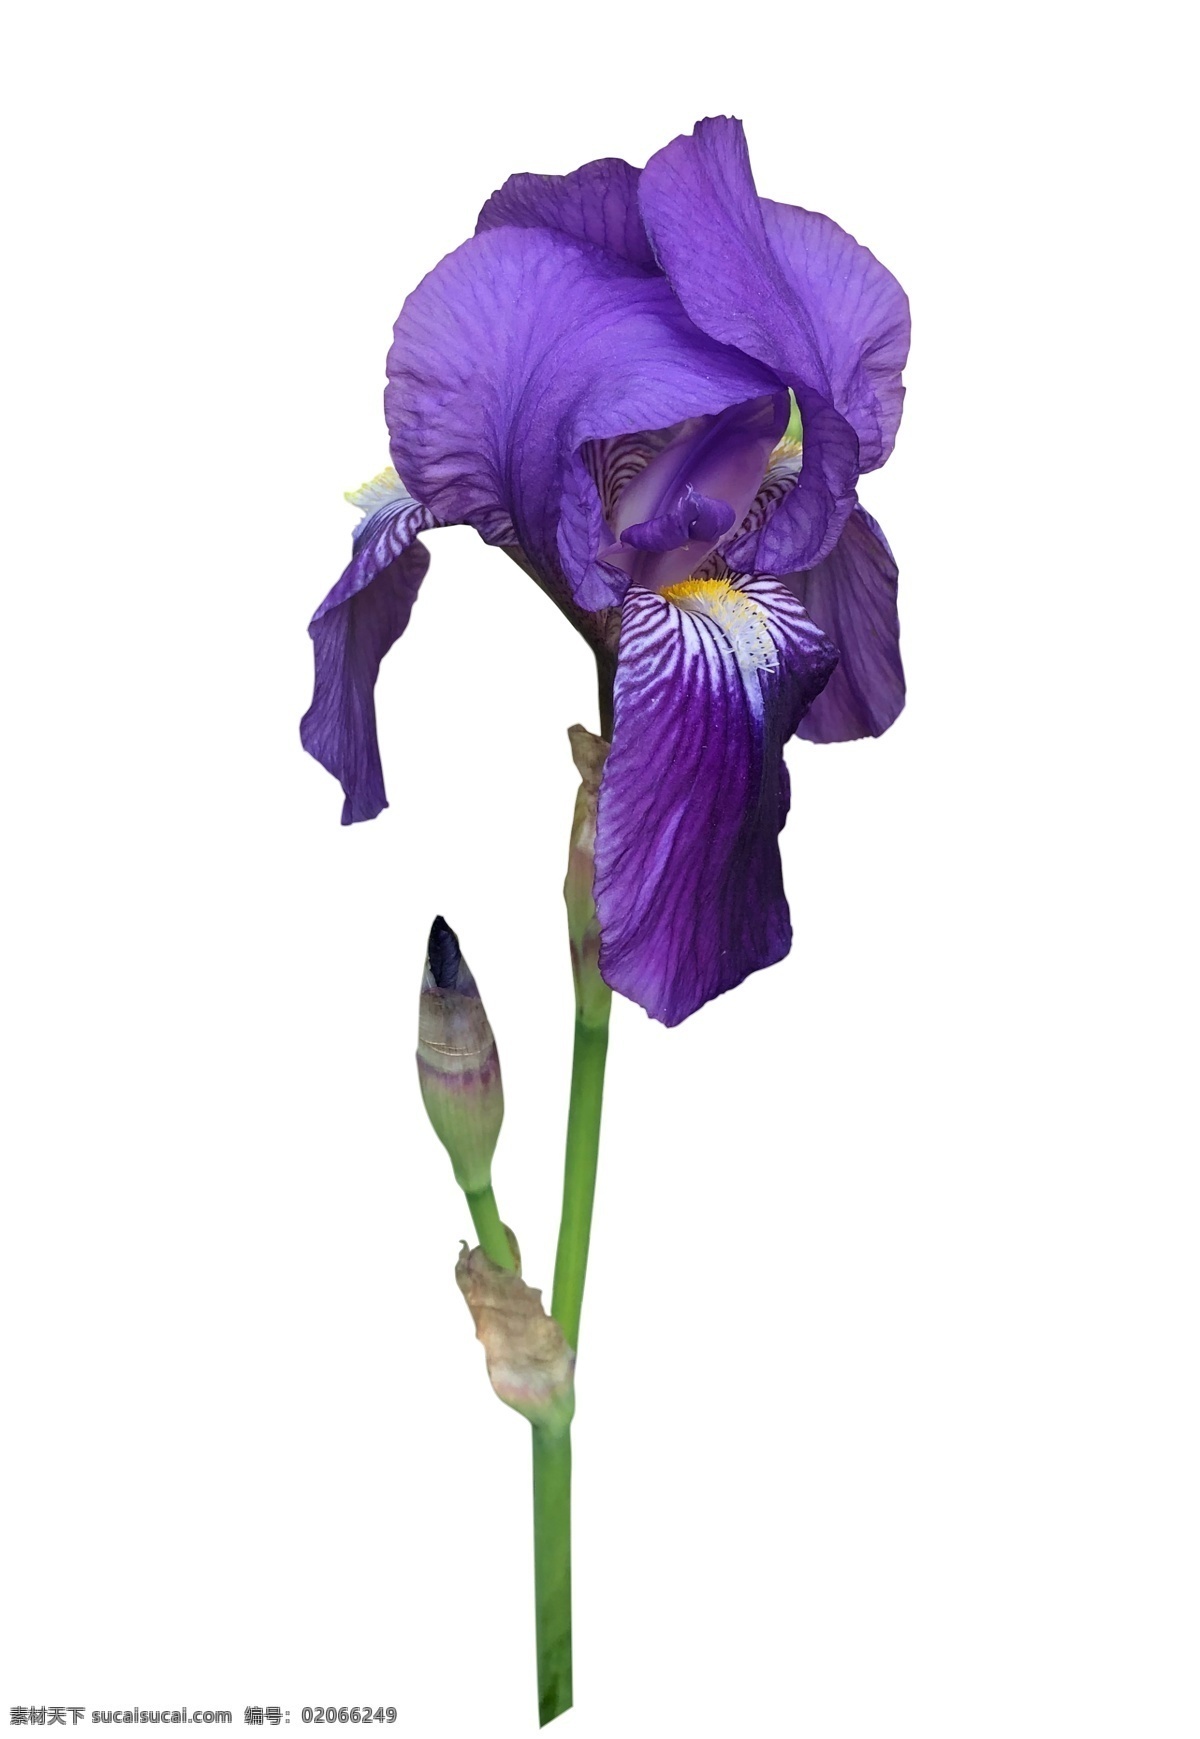 鸢尾花 鲜花 花卉白底抠图 紫色 花卉摄影 自然景观